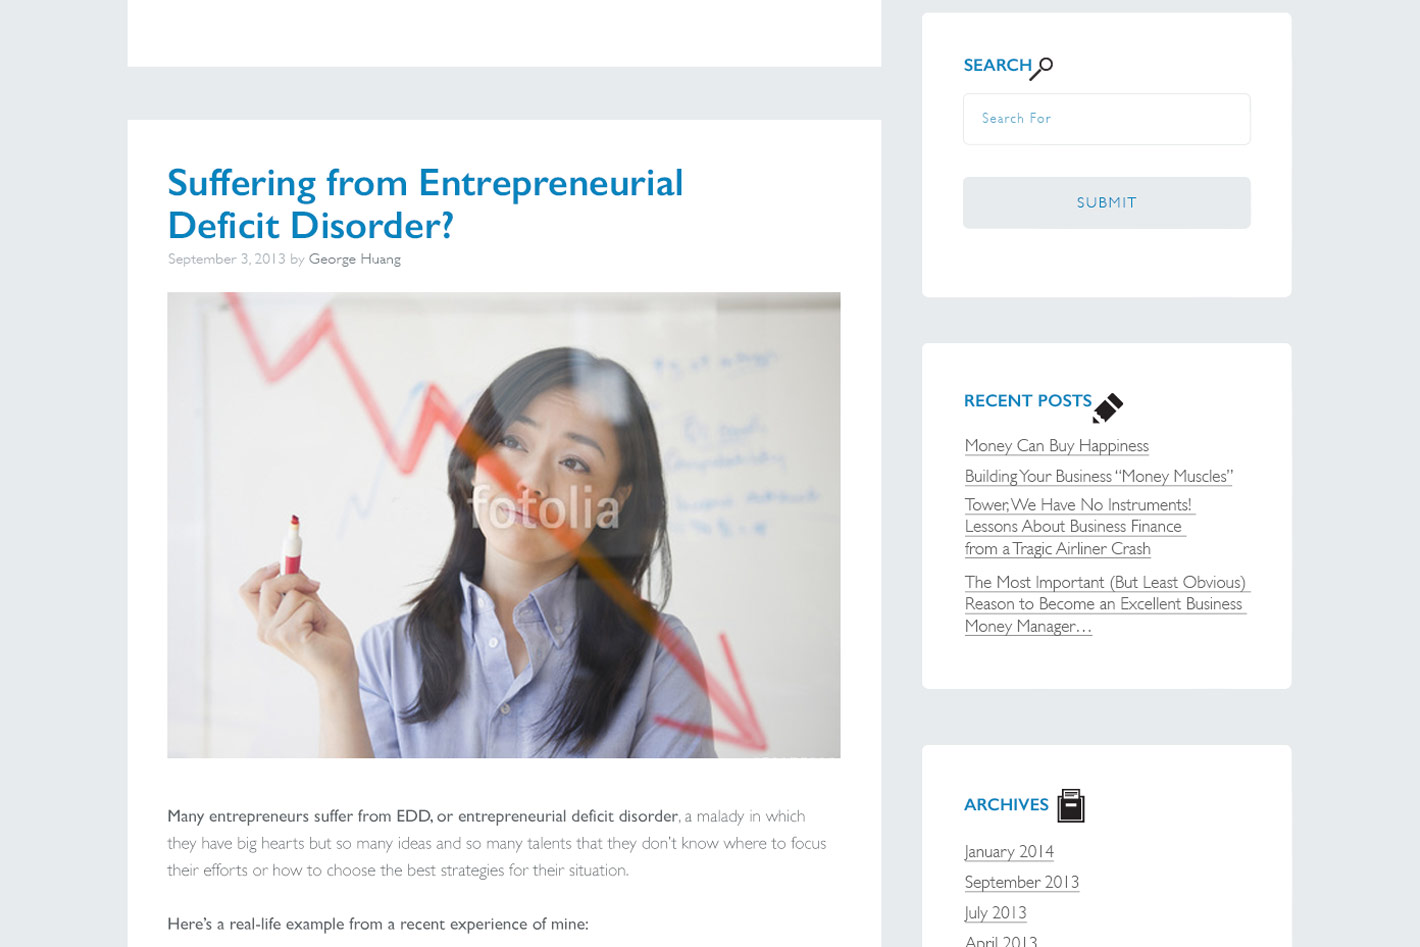 Freedompreneur Homepage